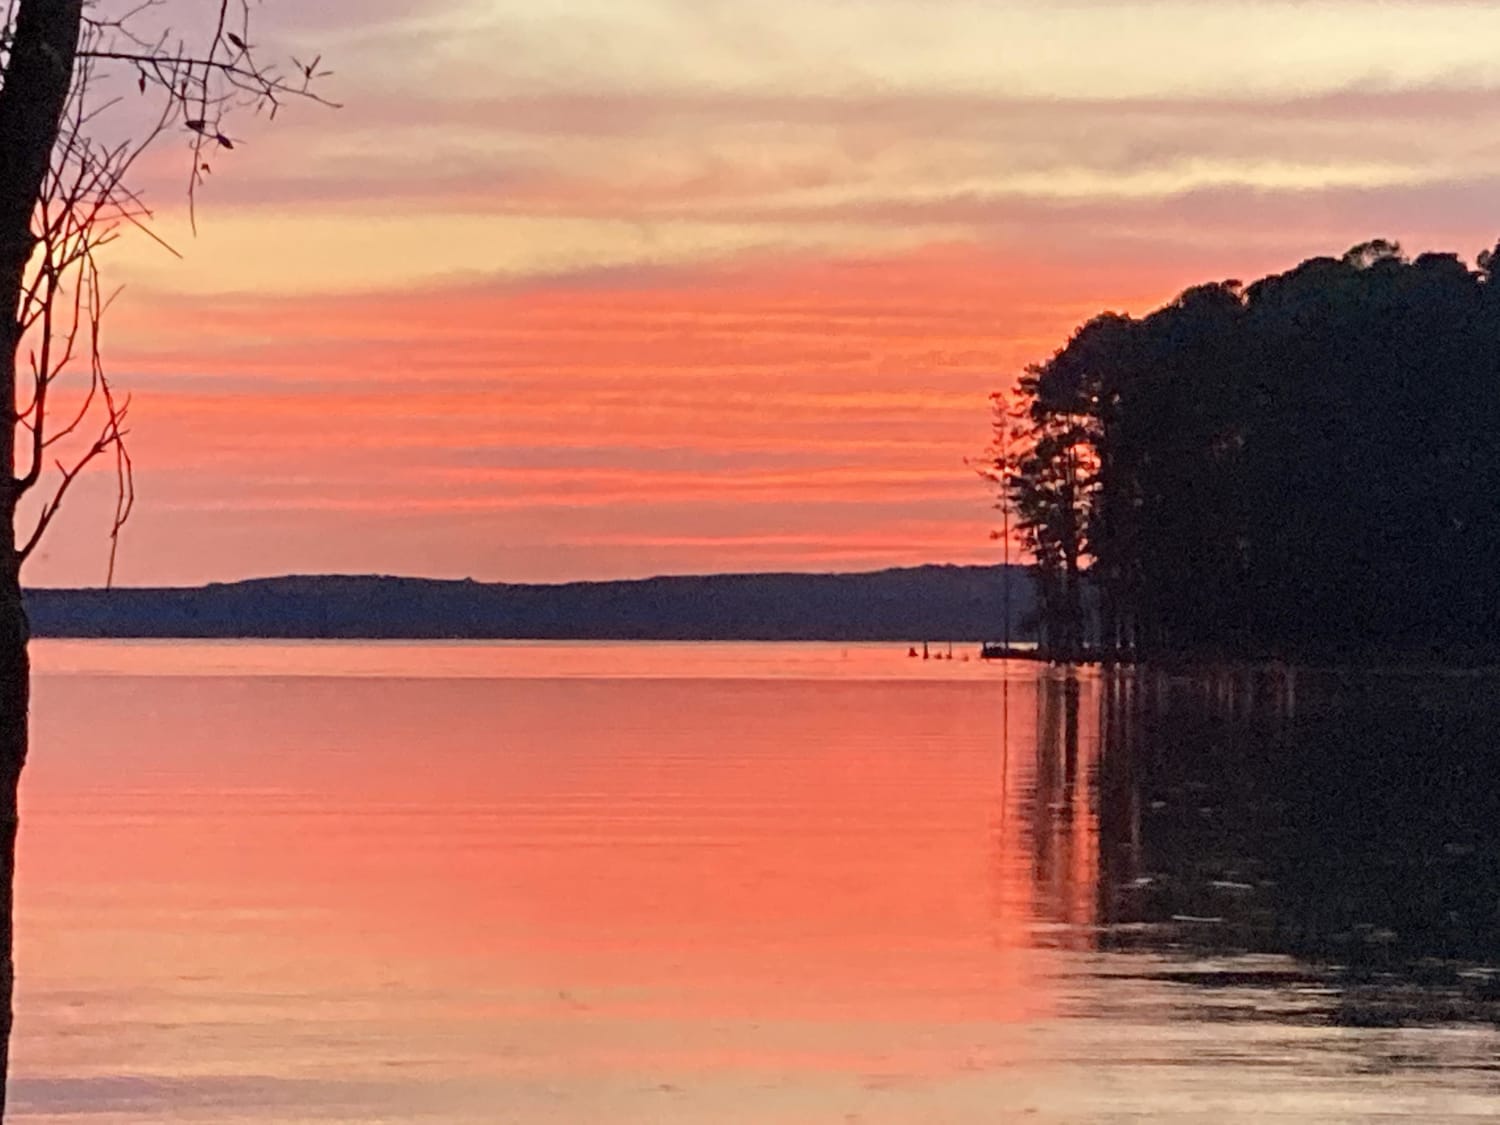 Jordan Lake, North Carolina tonight